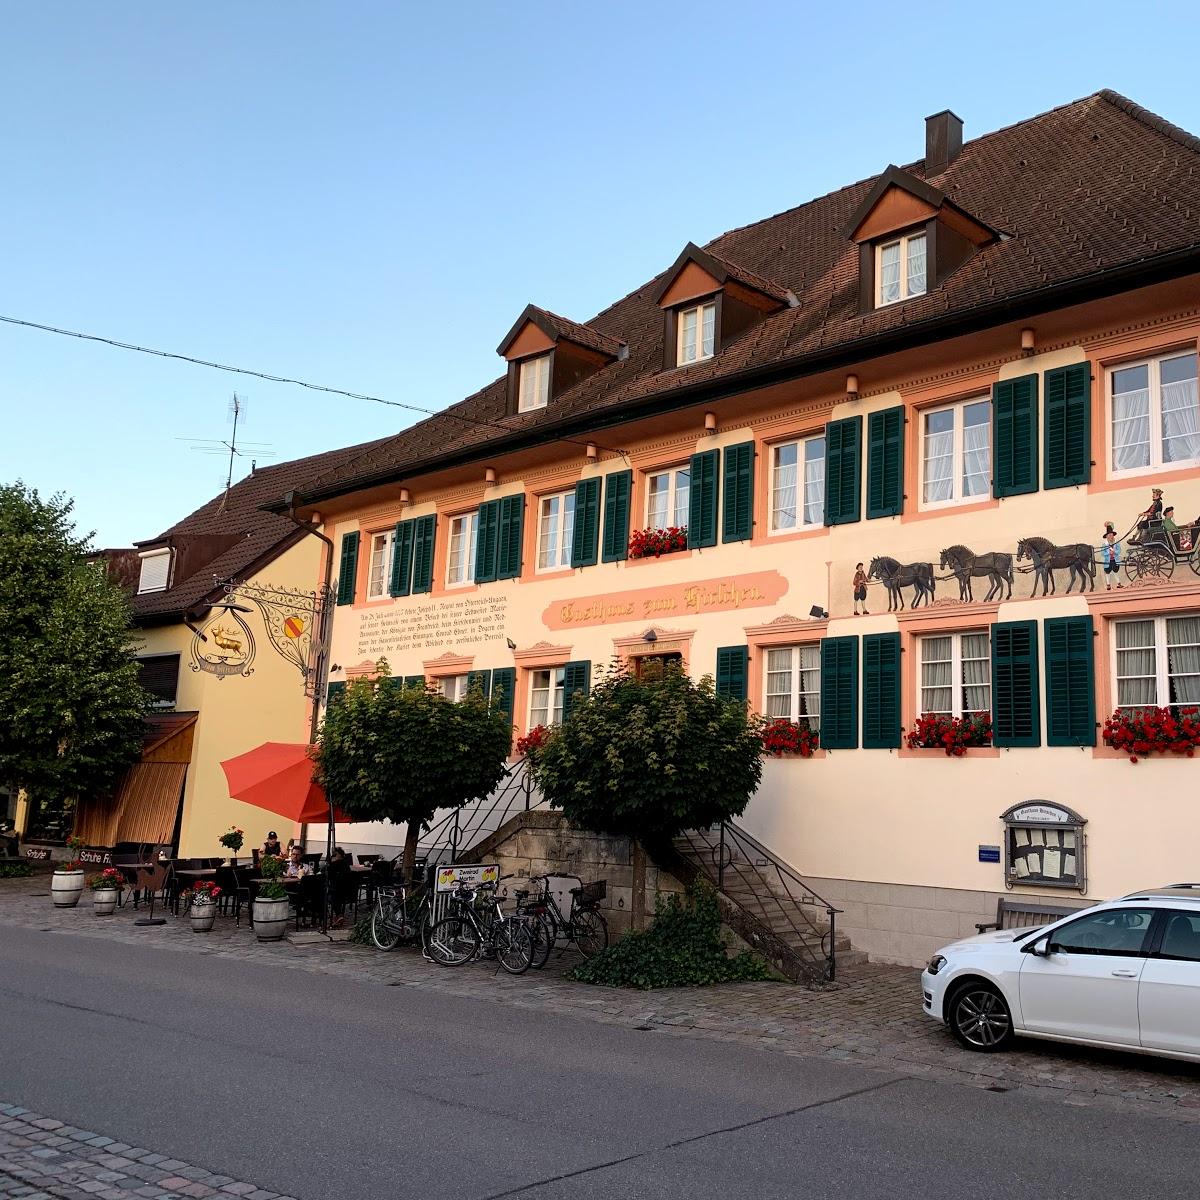 Restaurant "Gasthaus zum Hirschen" in Dogern